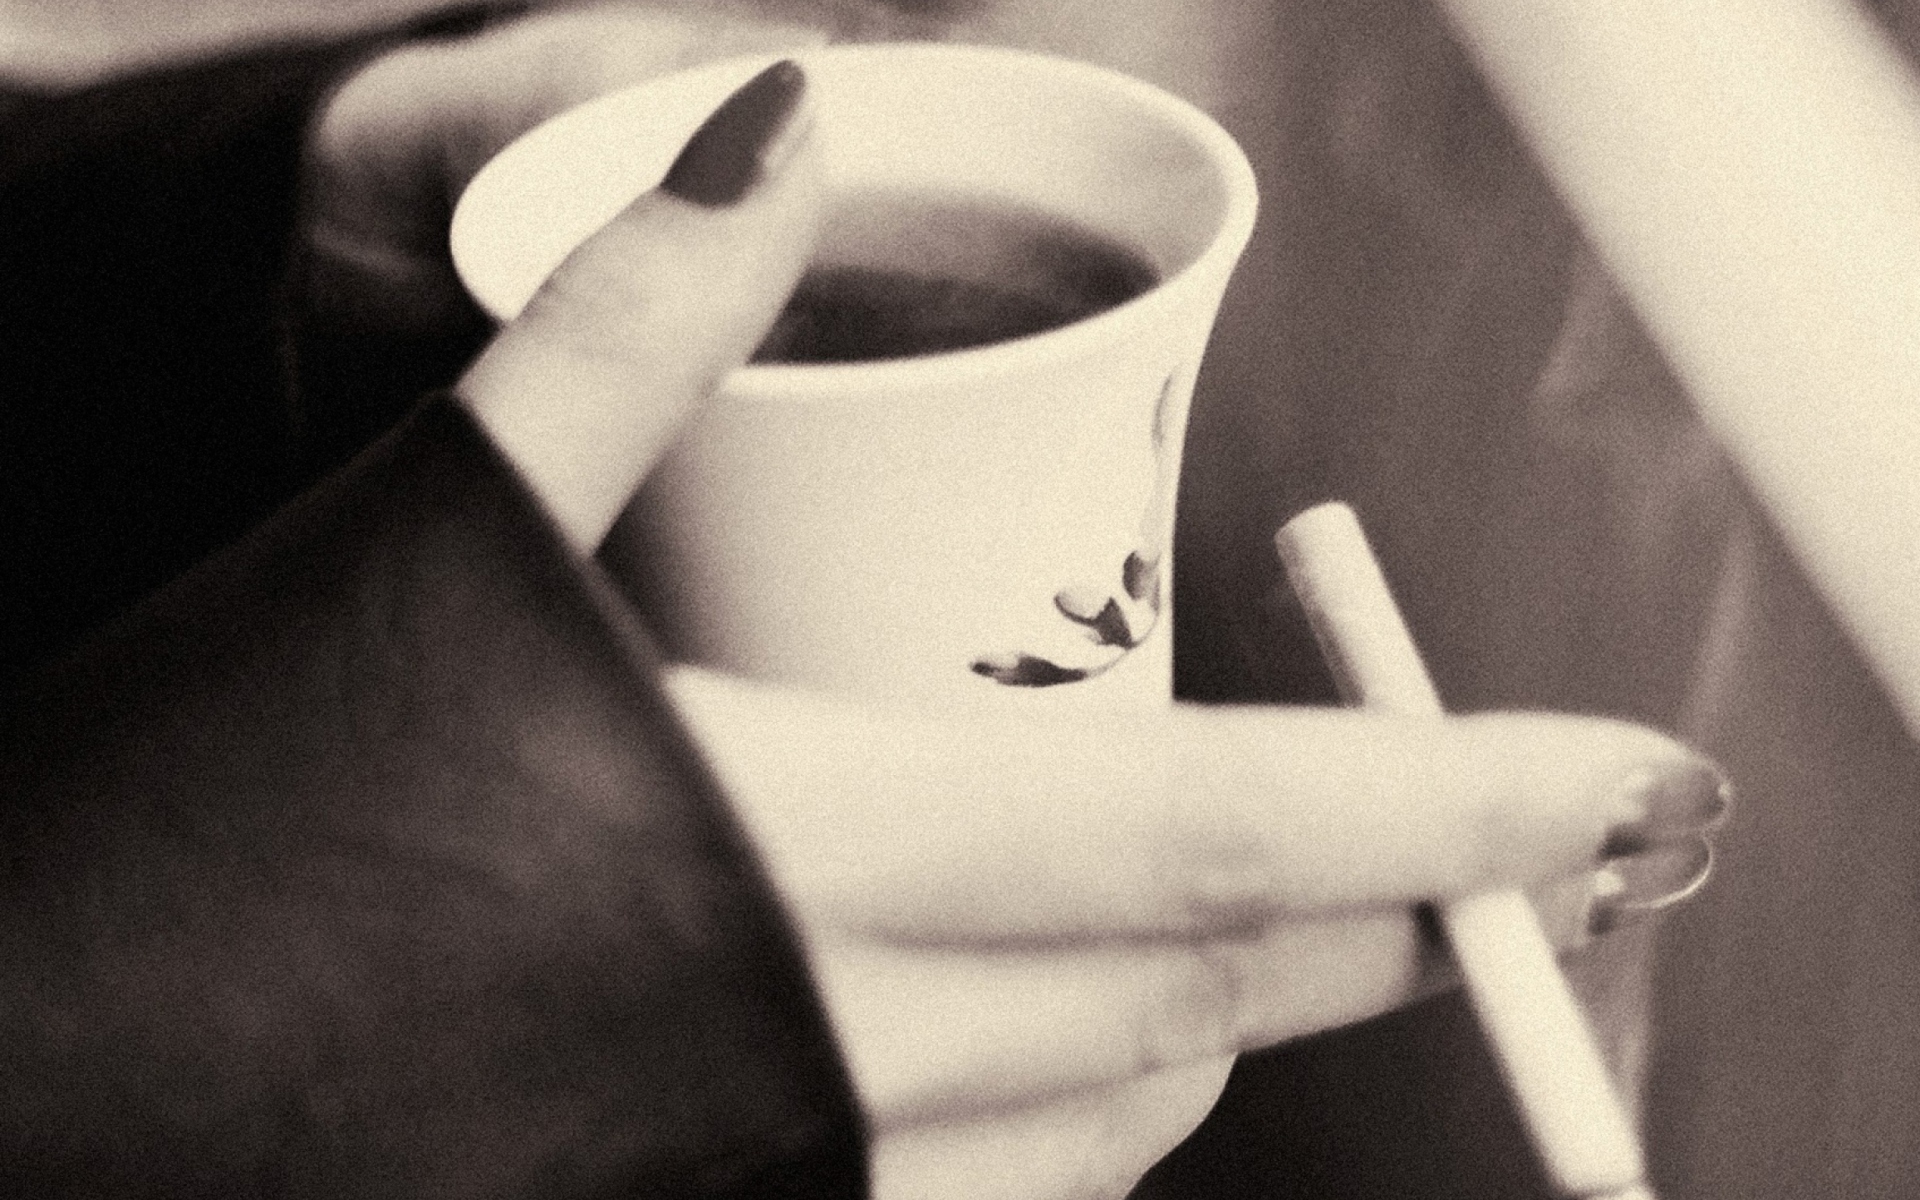 Das Hot Coffee In Her Hands Wallpaper 1920x1200